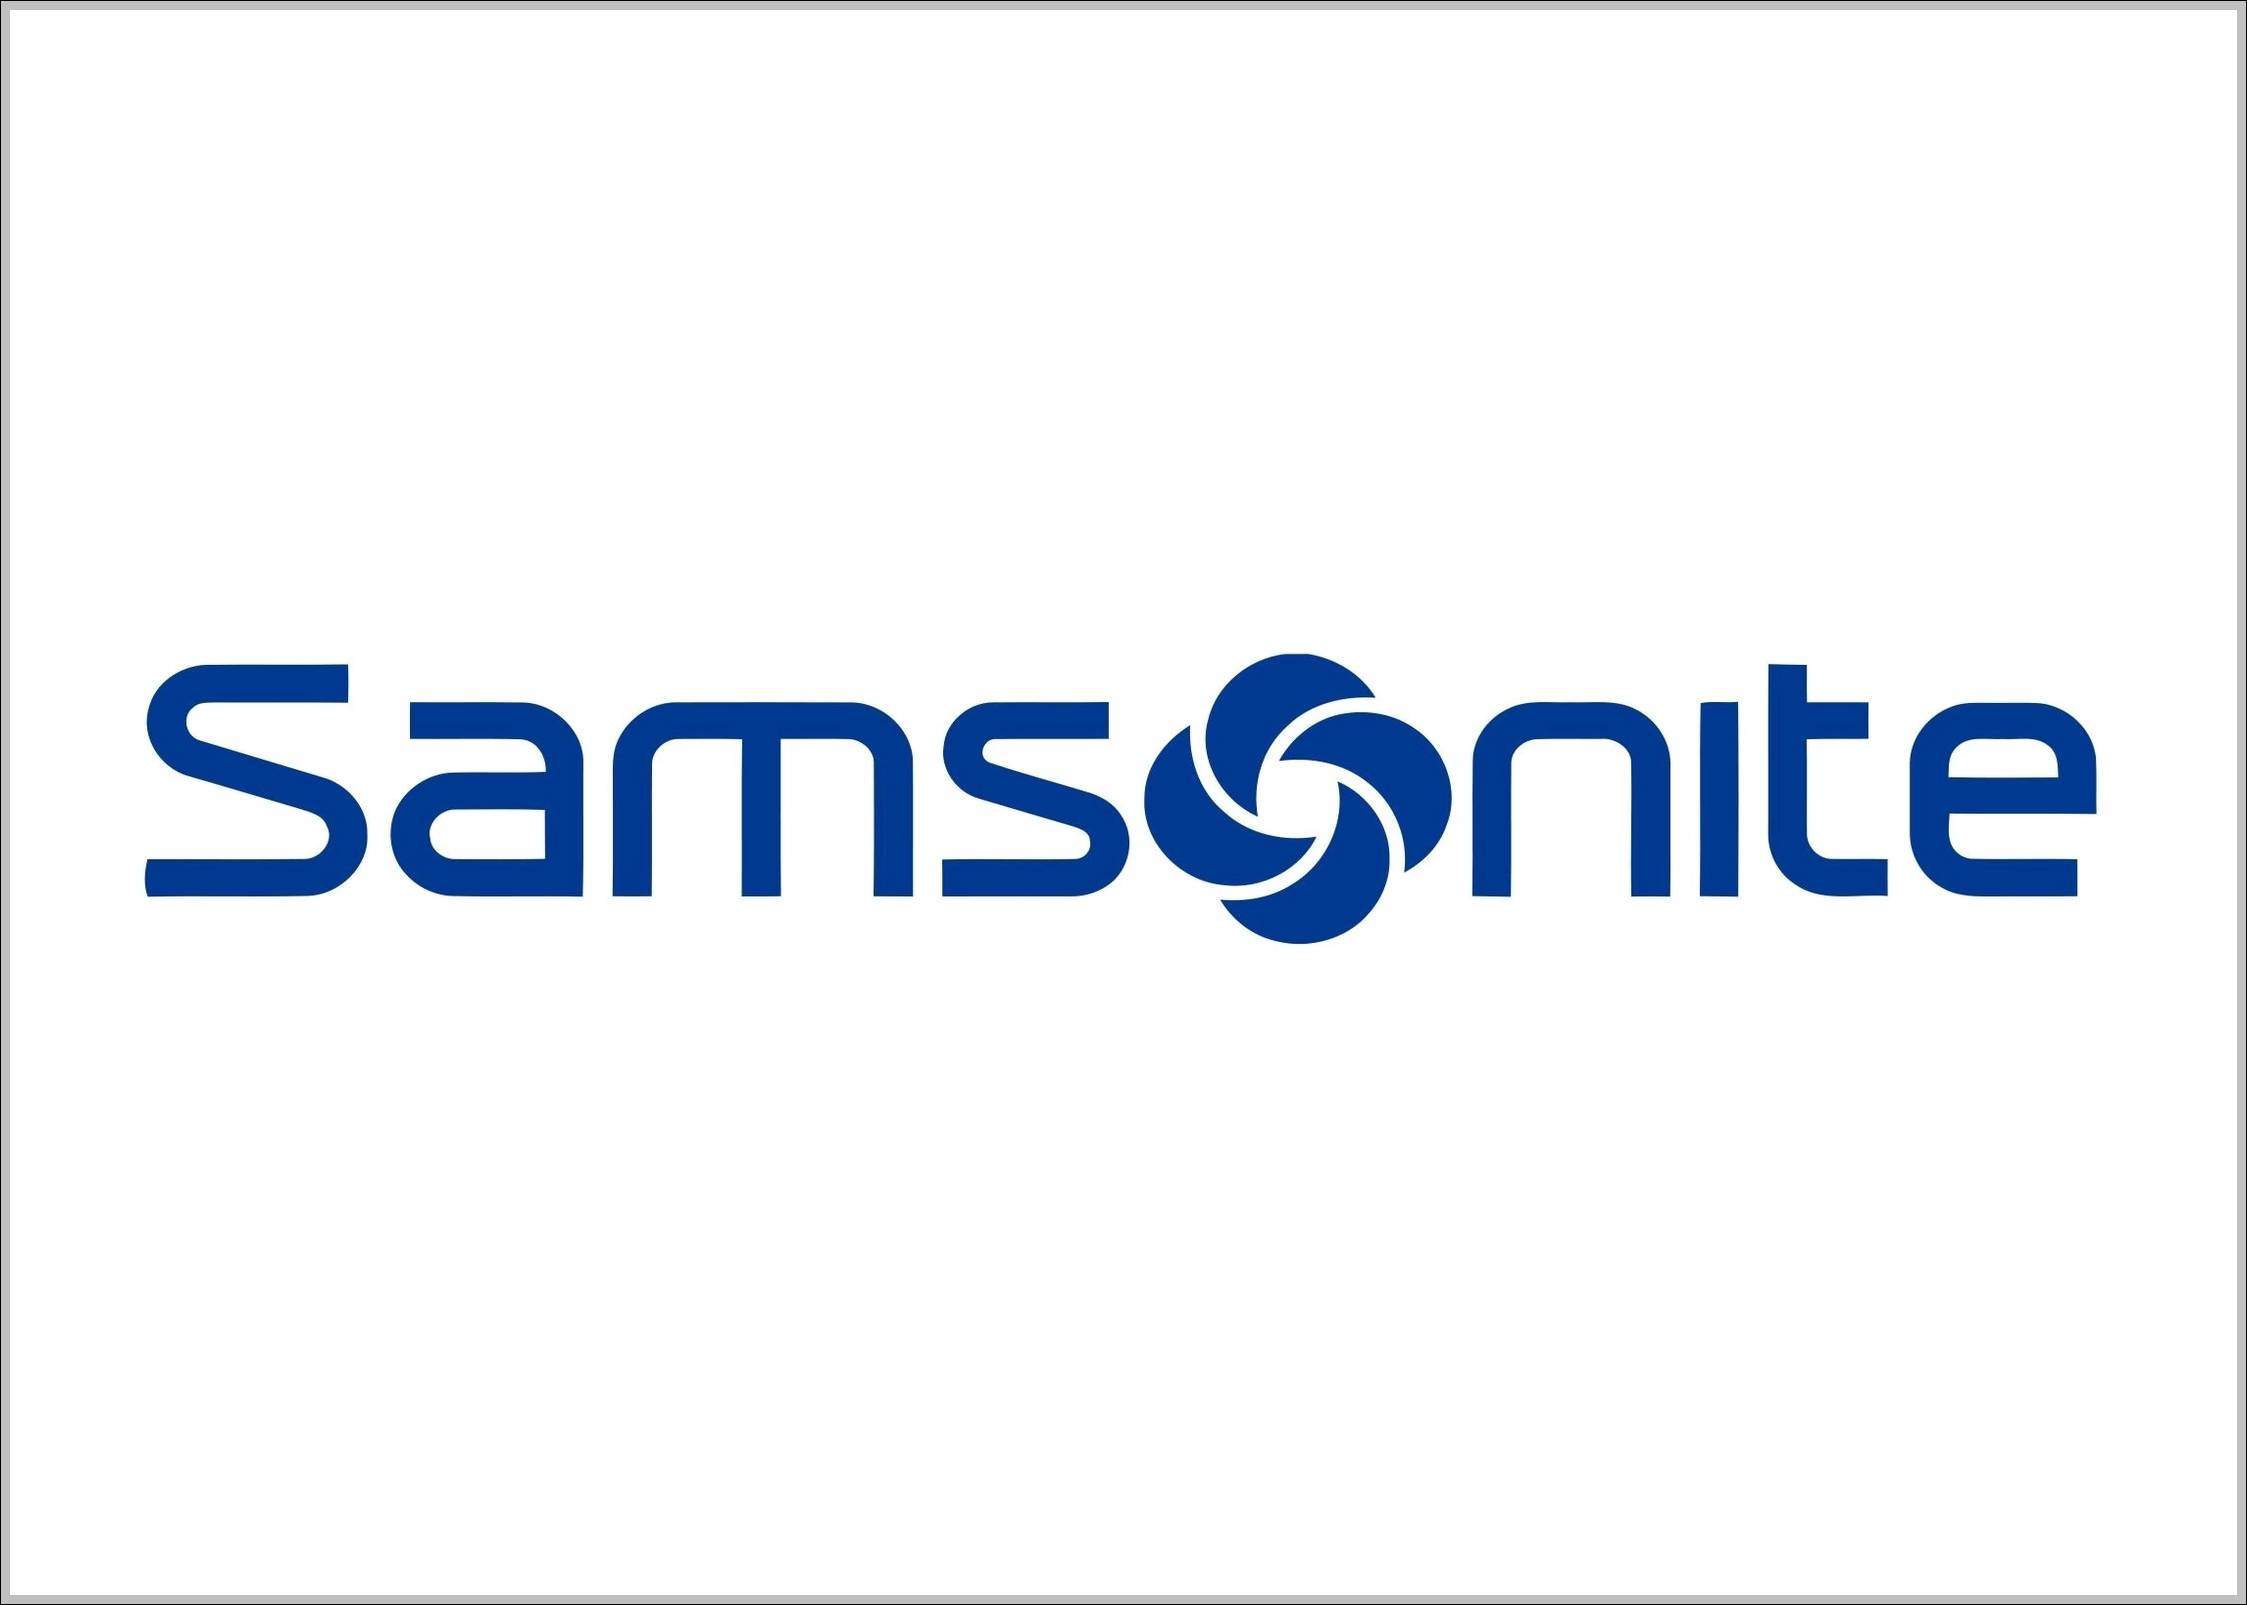 Samsonite sign